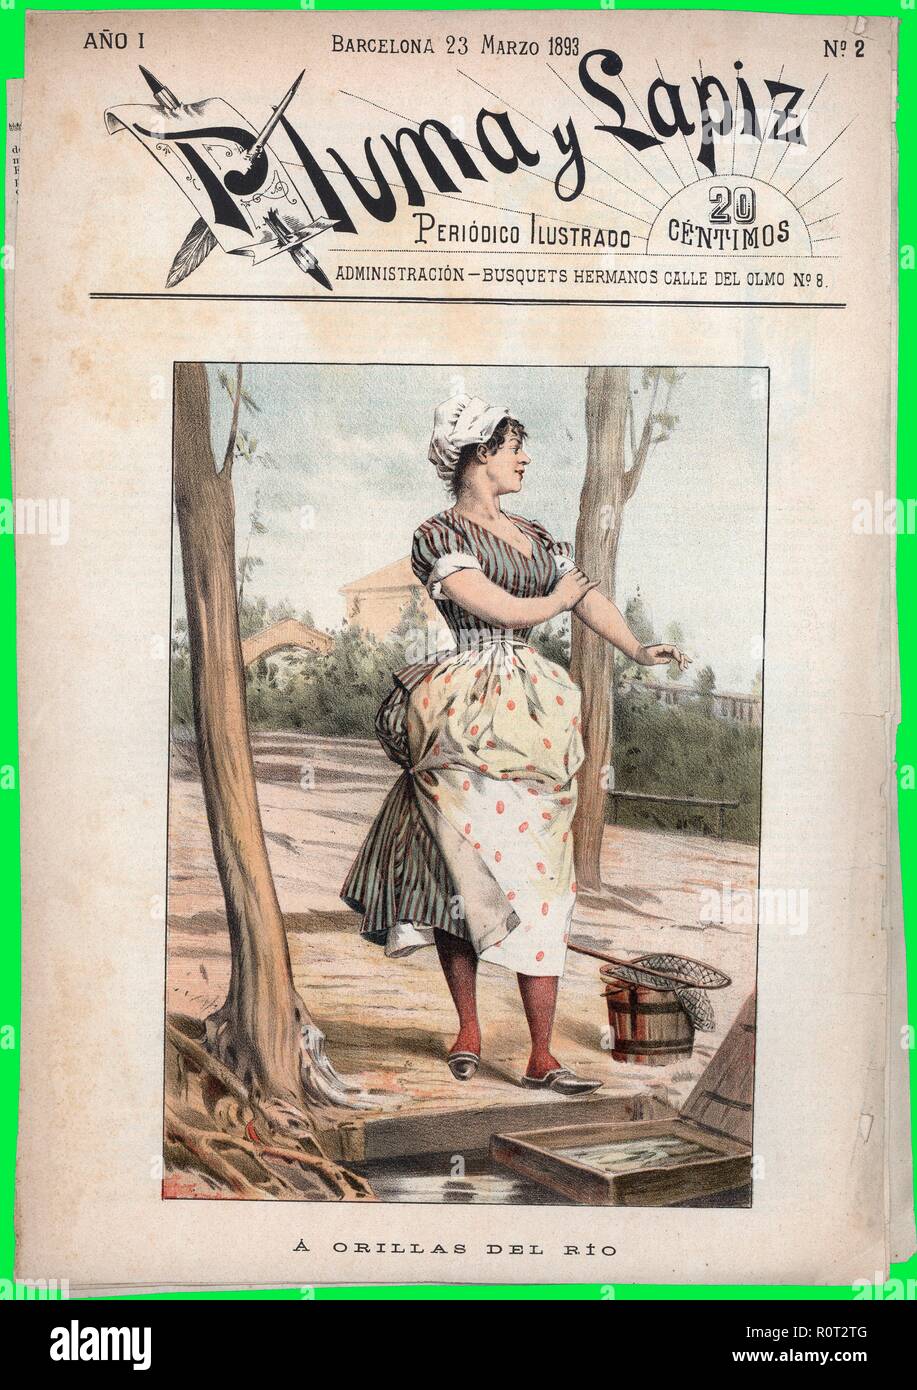 Portada del periódico ilustrado Pluma y Lápiz, número dos, editado en Barcelona, marzo de 1893. Stock Photo